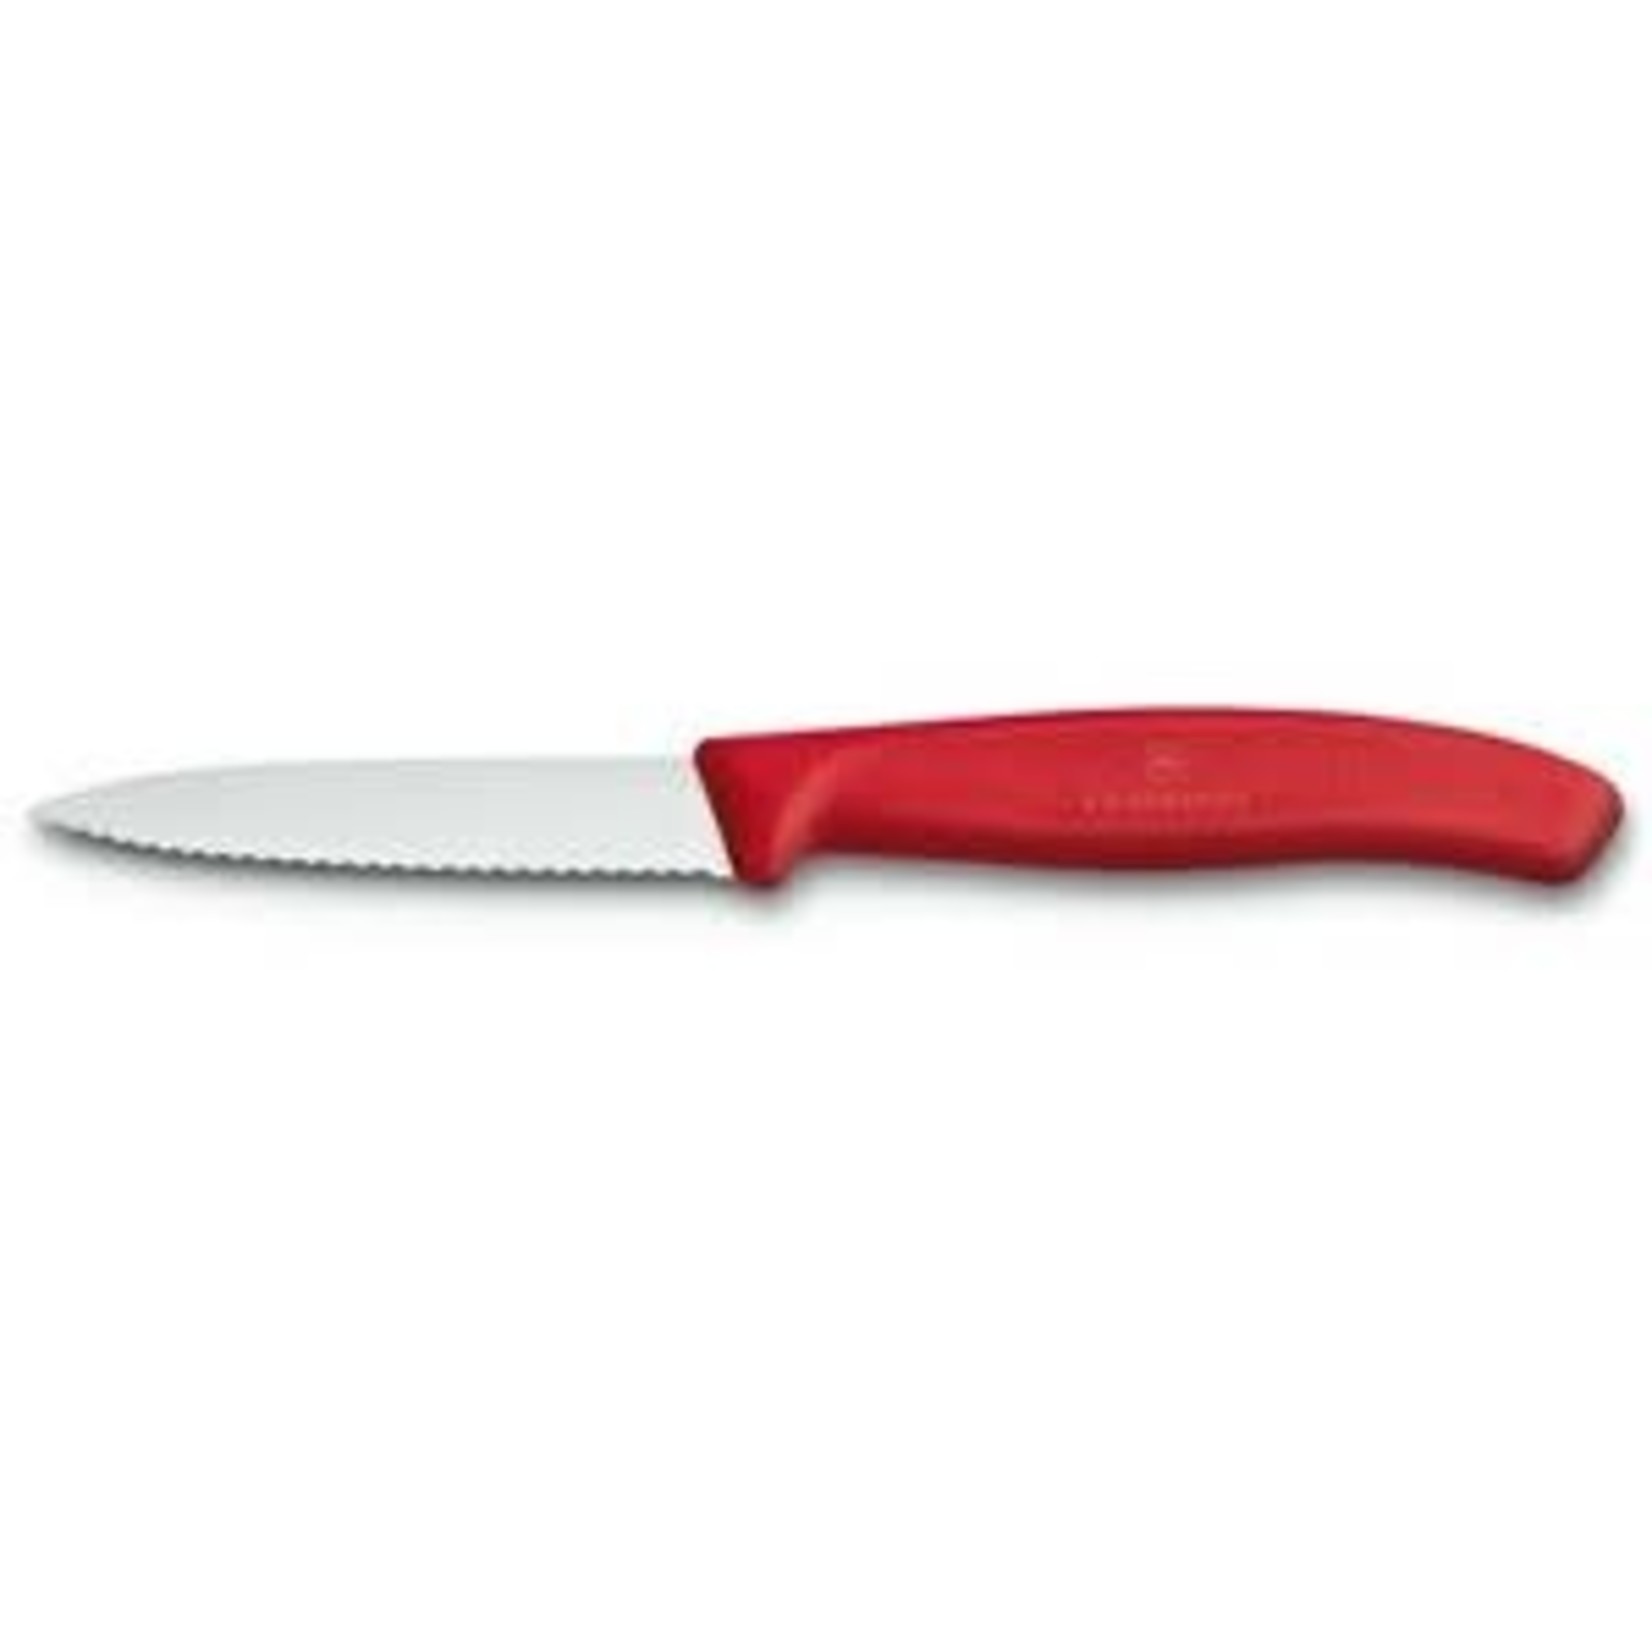 https://cdn.shoplightspeed.com/shops/627977/files/41807943/1652x1652x2/kadra-victorinox-swiss-classic-paring-knife-w-serr.jpg